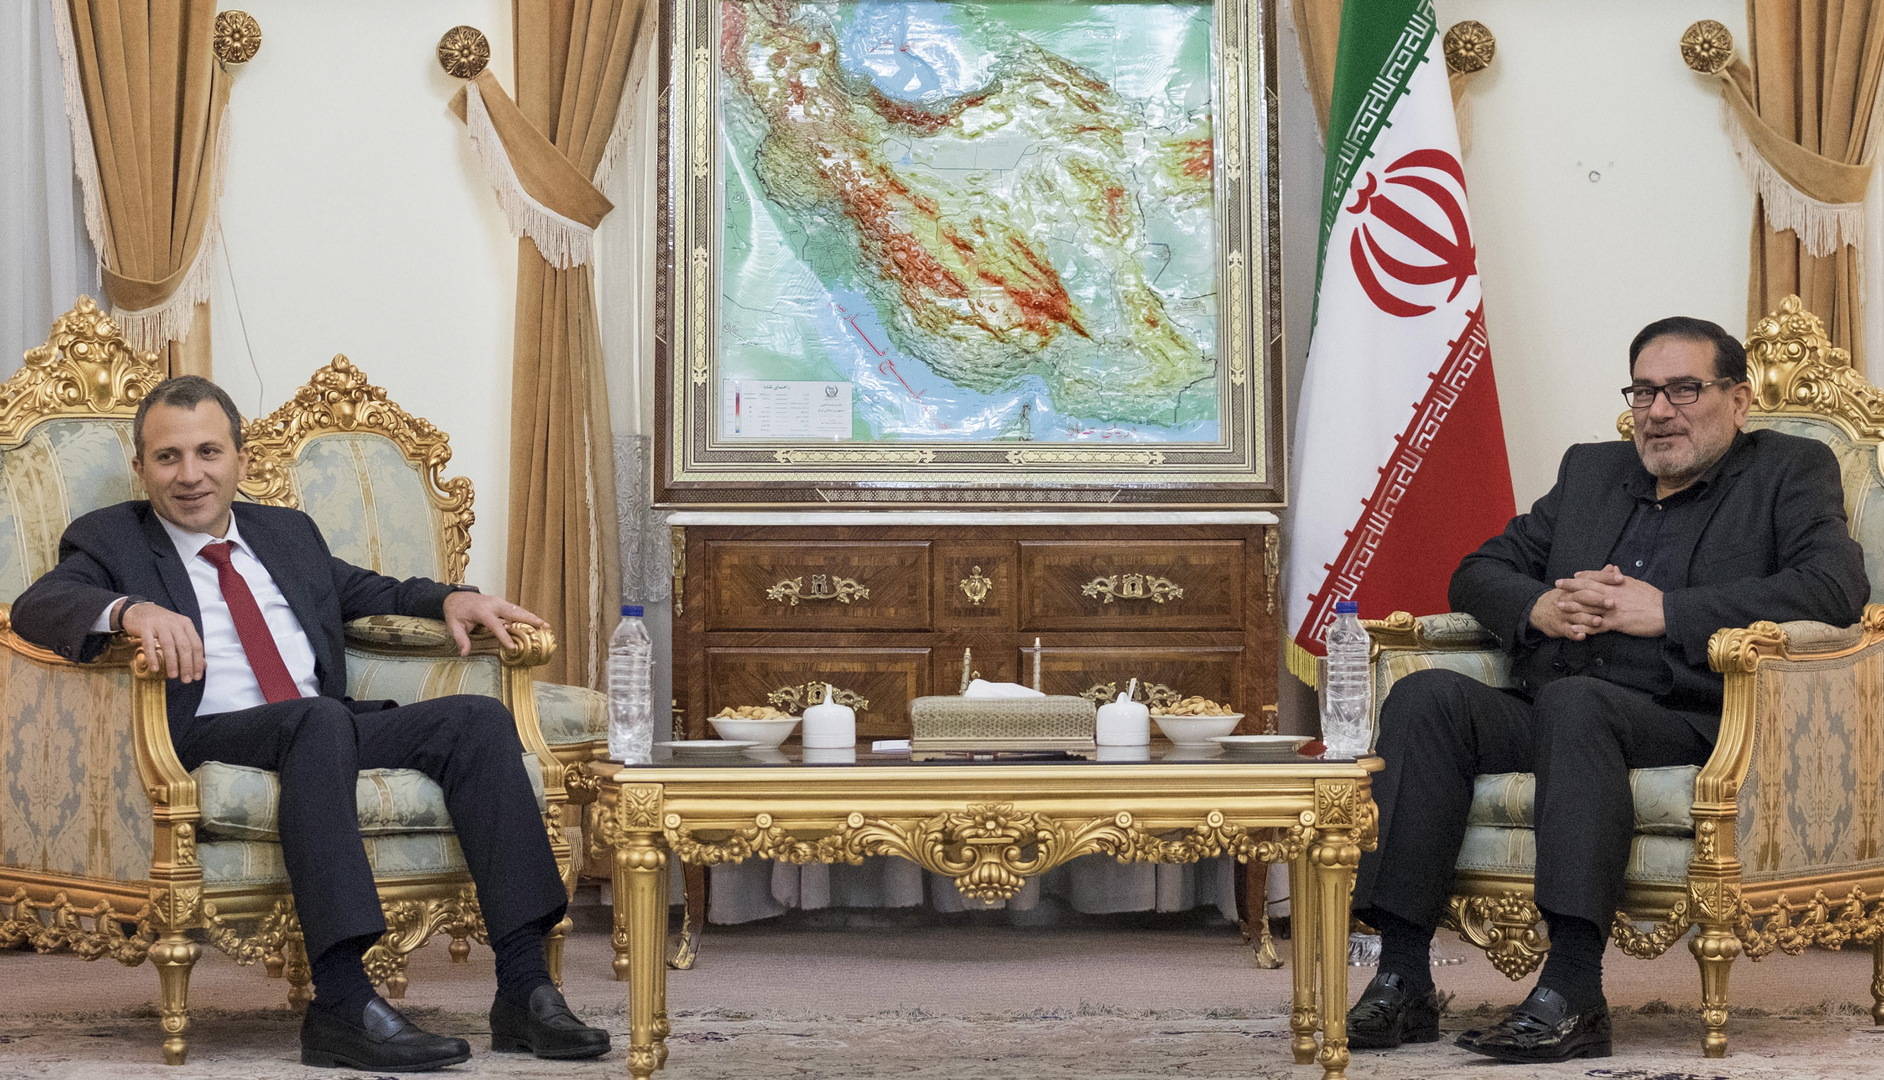 البيت الأبيض لا يتوقع أي تغيير في السياسة تجاه إيران خلال المفاوضات الحالية